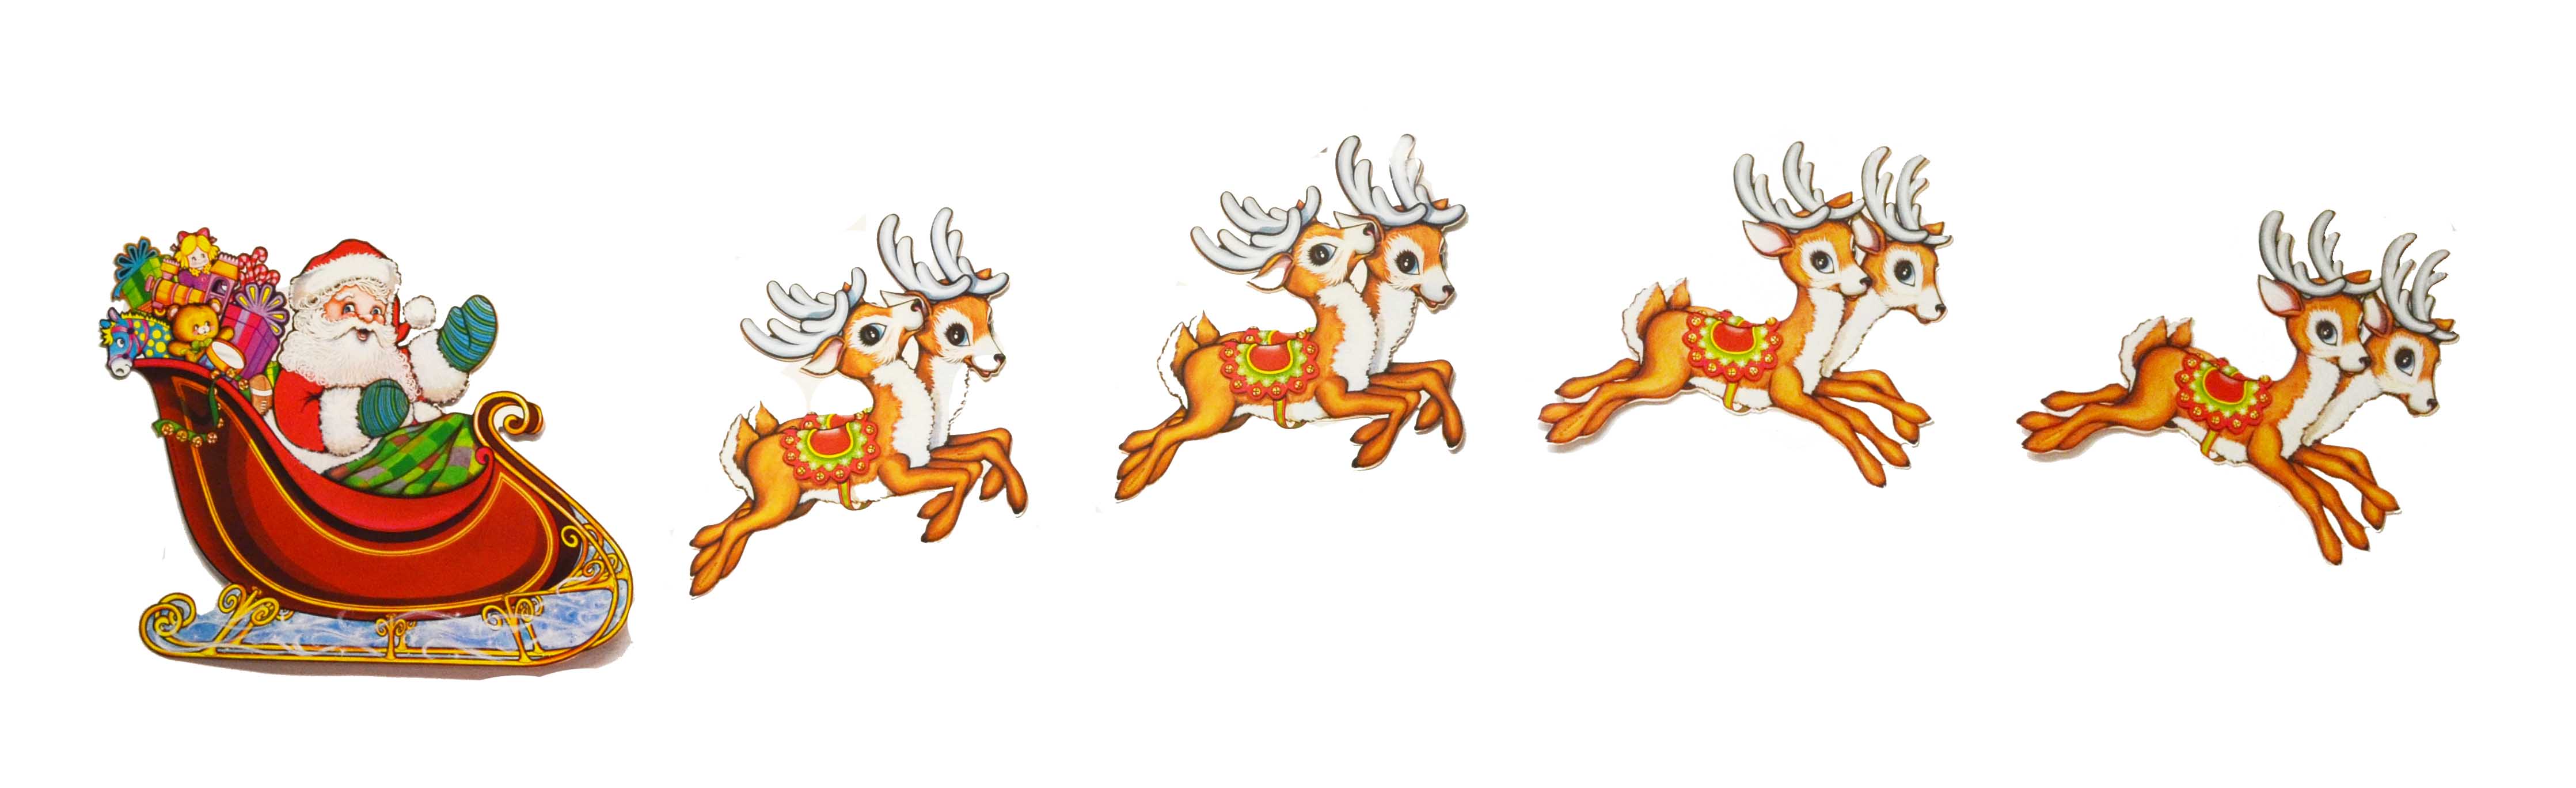 2m Santa Sleigh And Reindeer  - Santa Sleigh Clipart